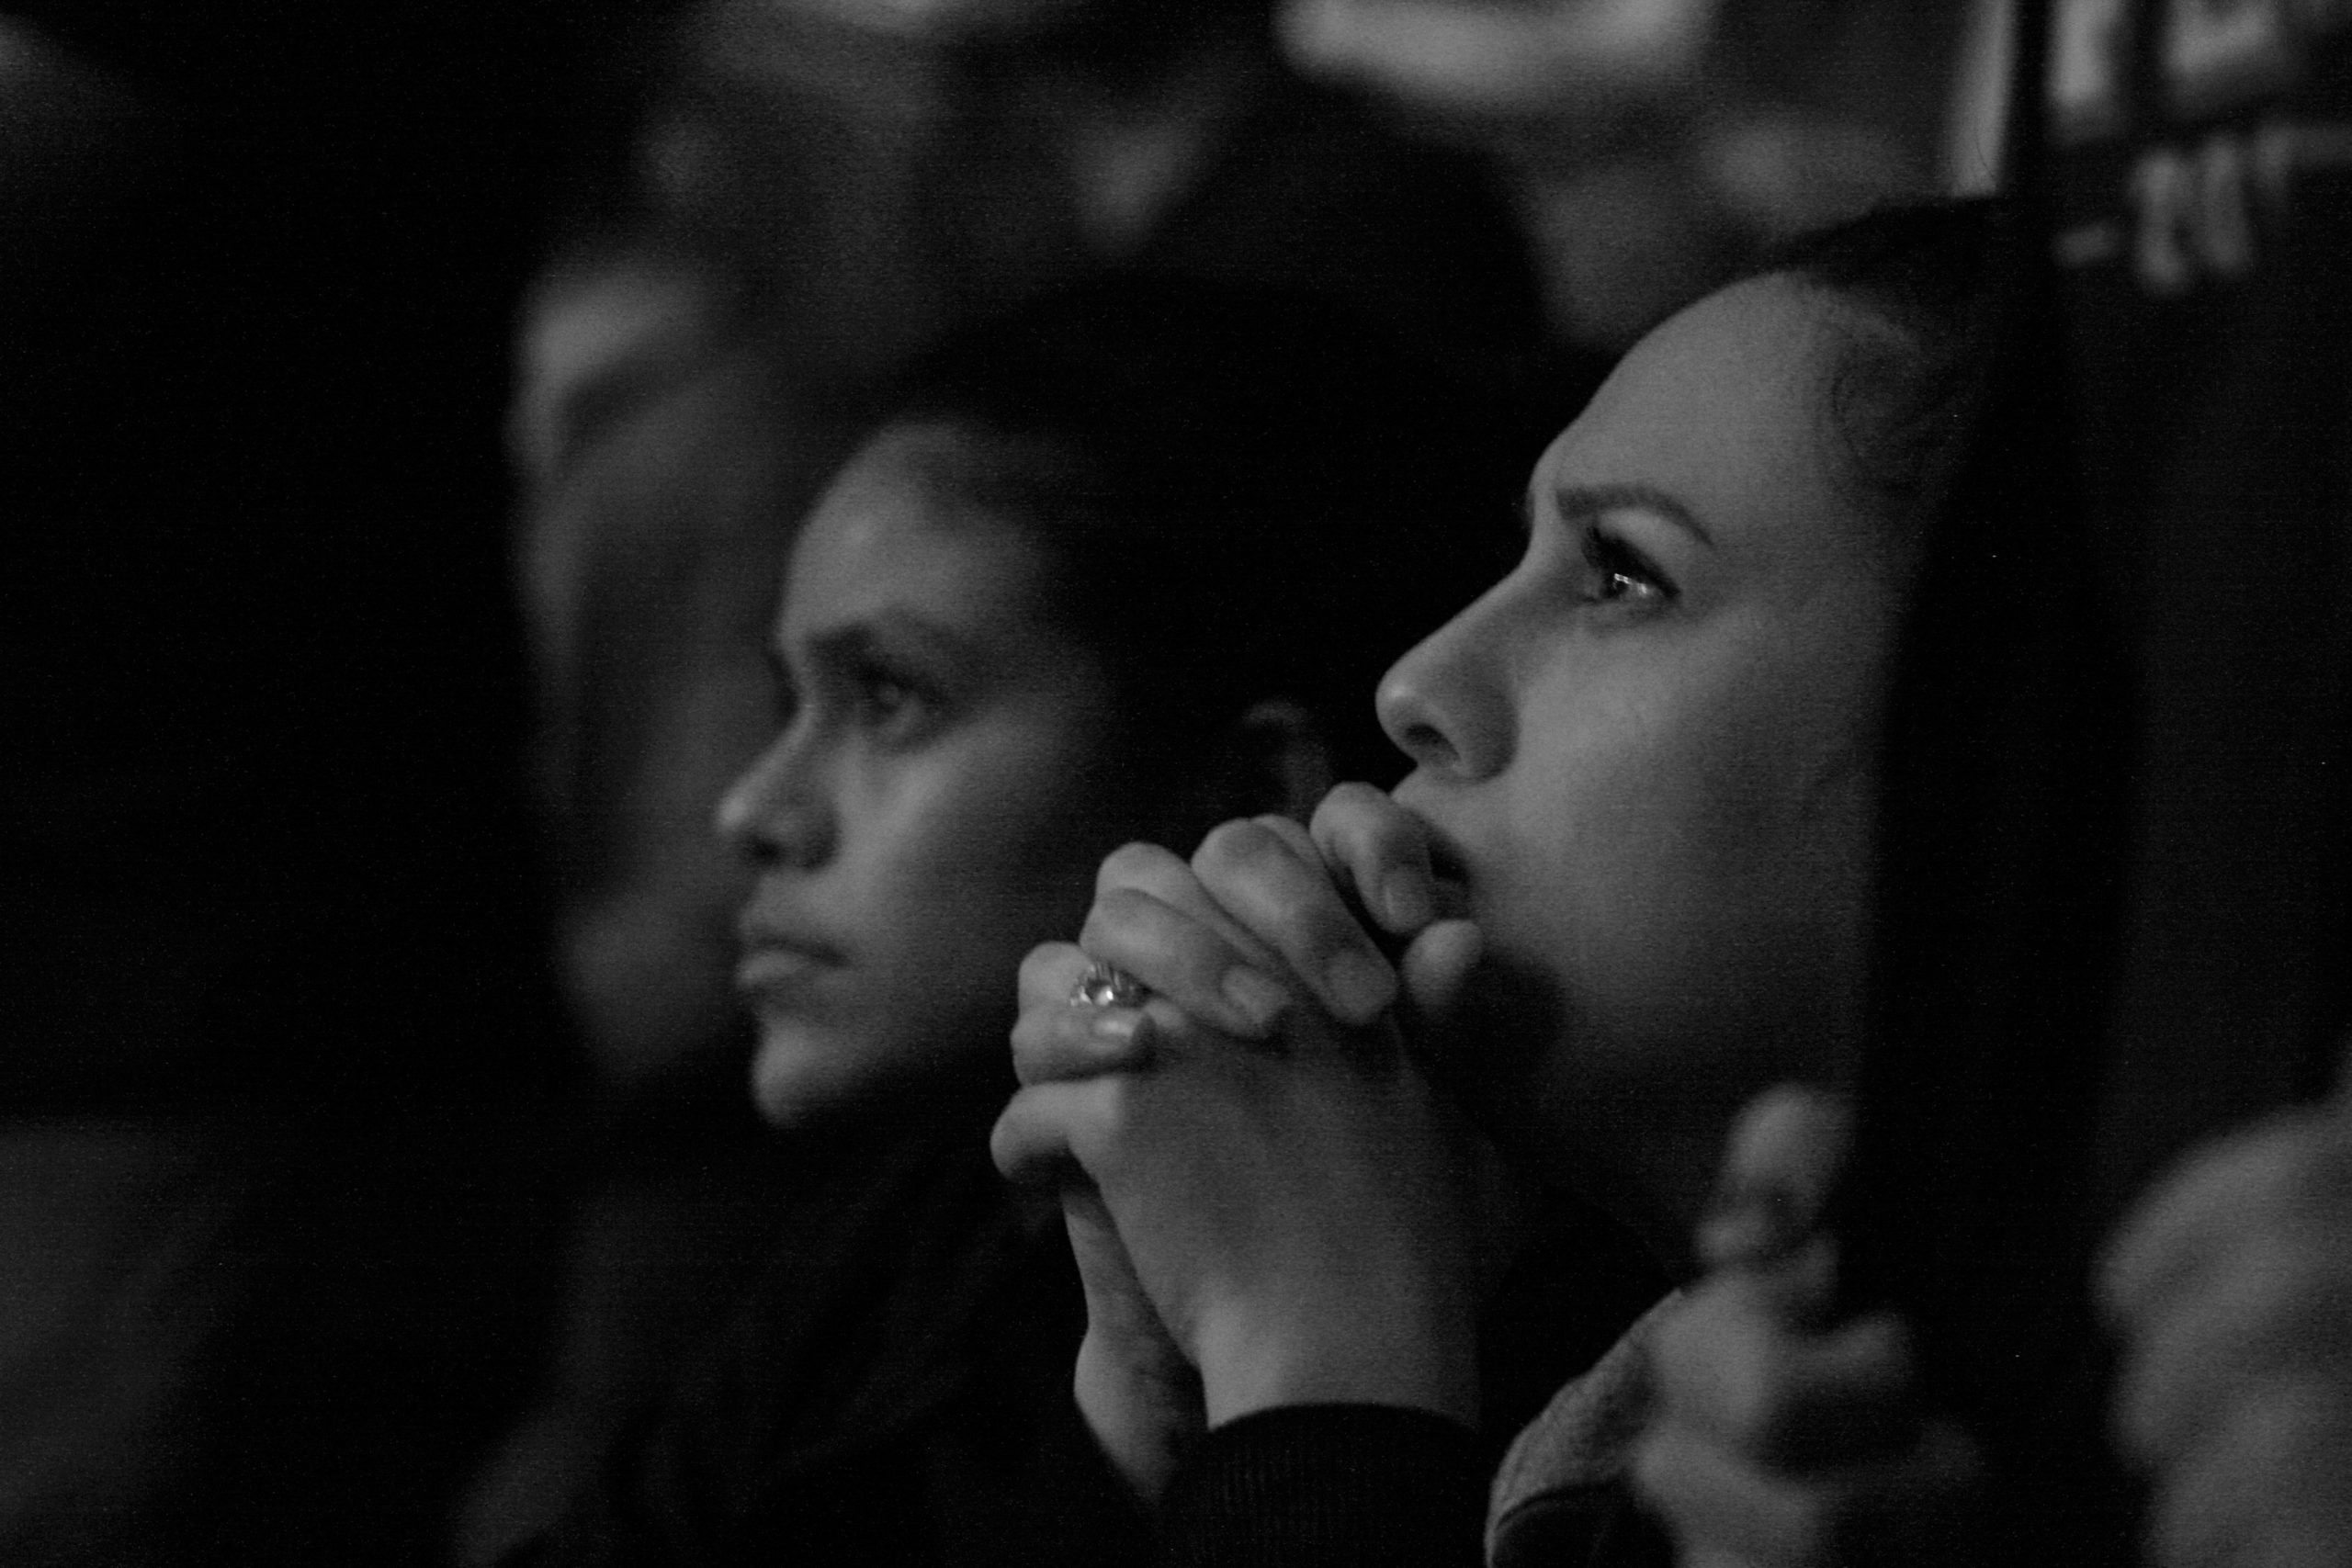 An audience member listening to a speech